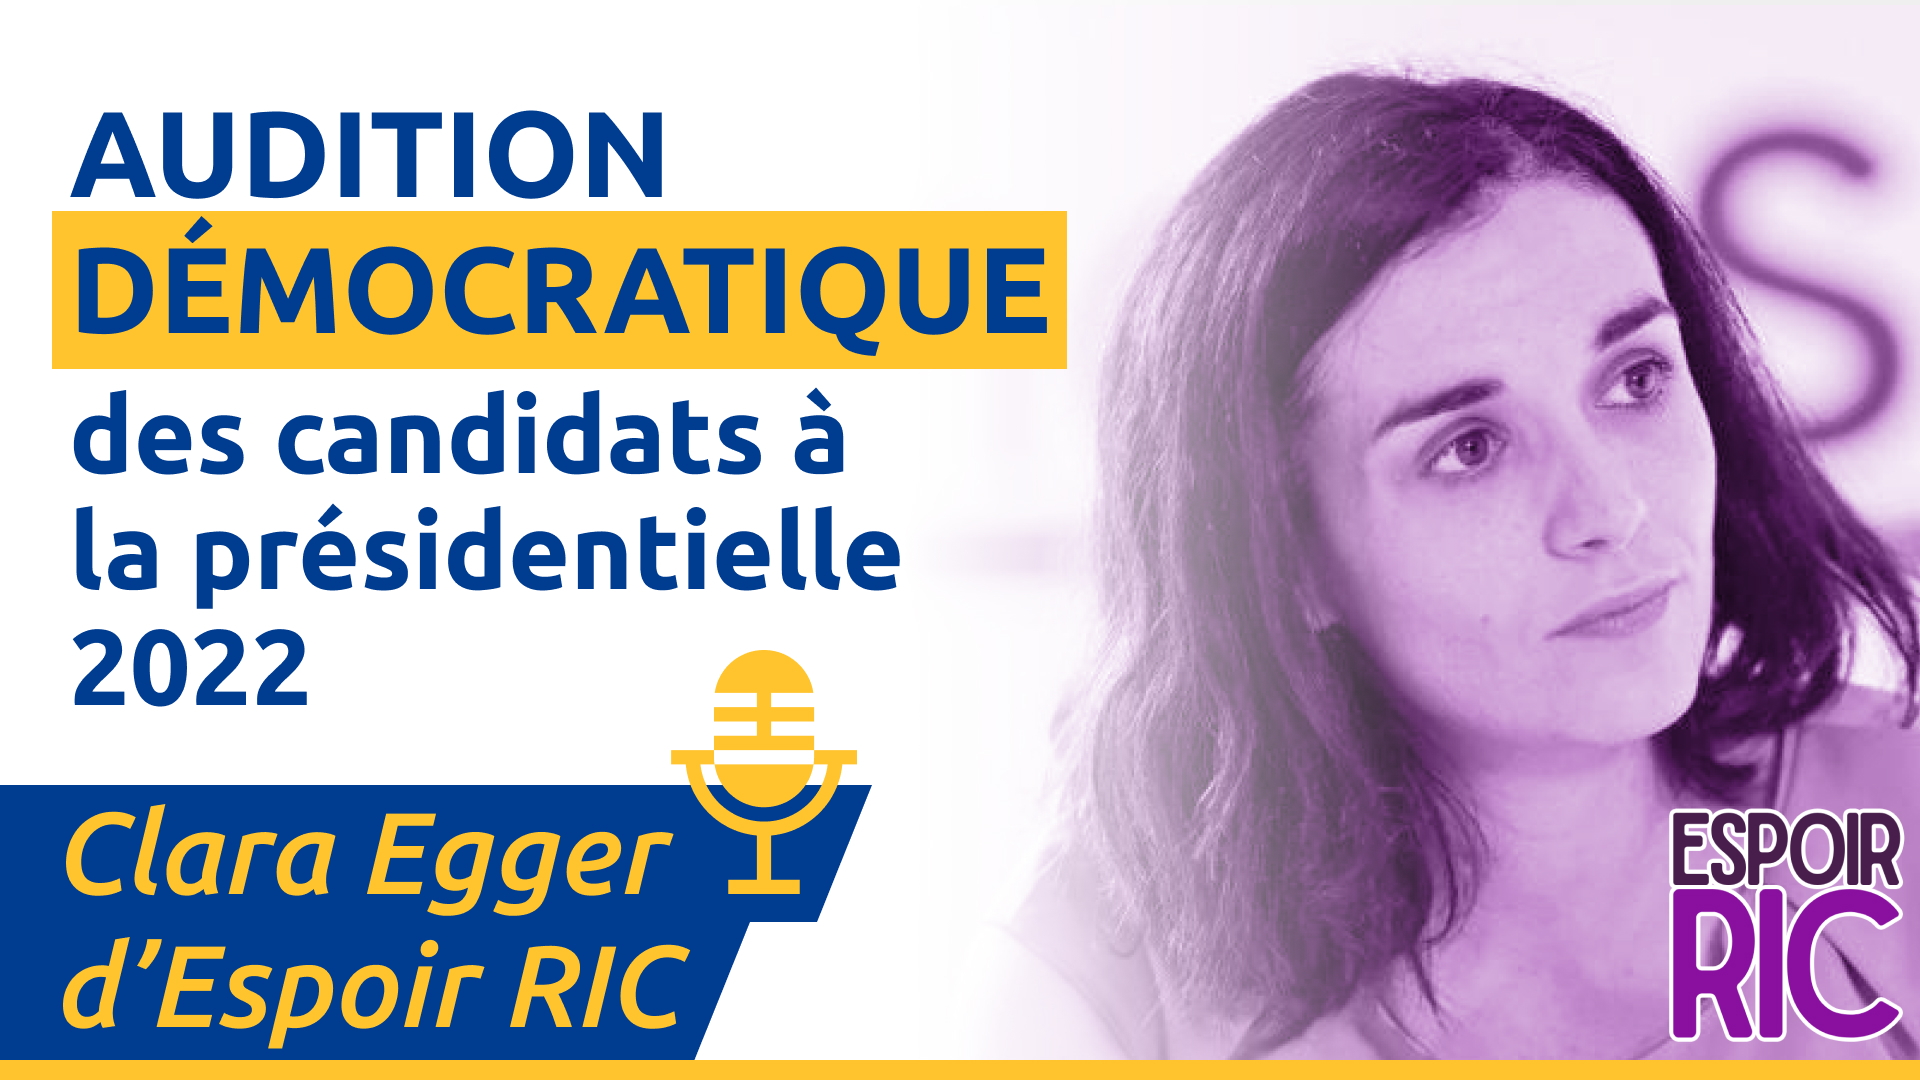 Live Audition démocratique de Clara Egger d’Espoir RIC